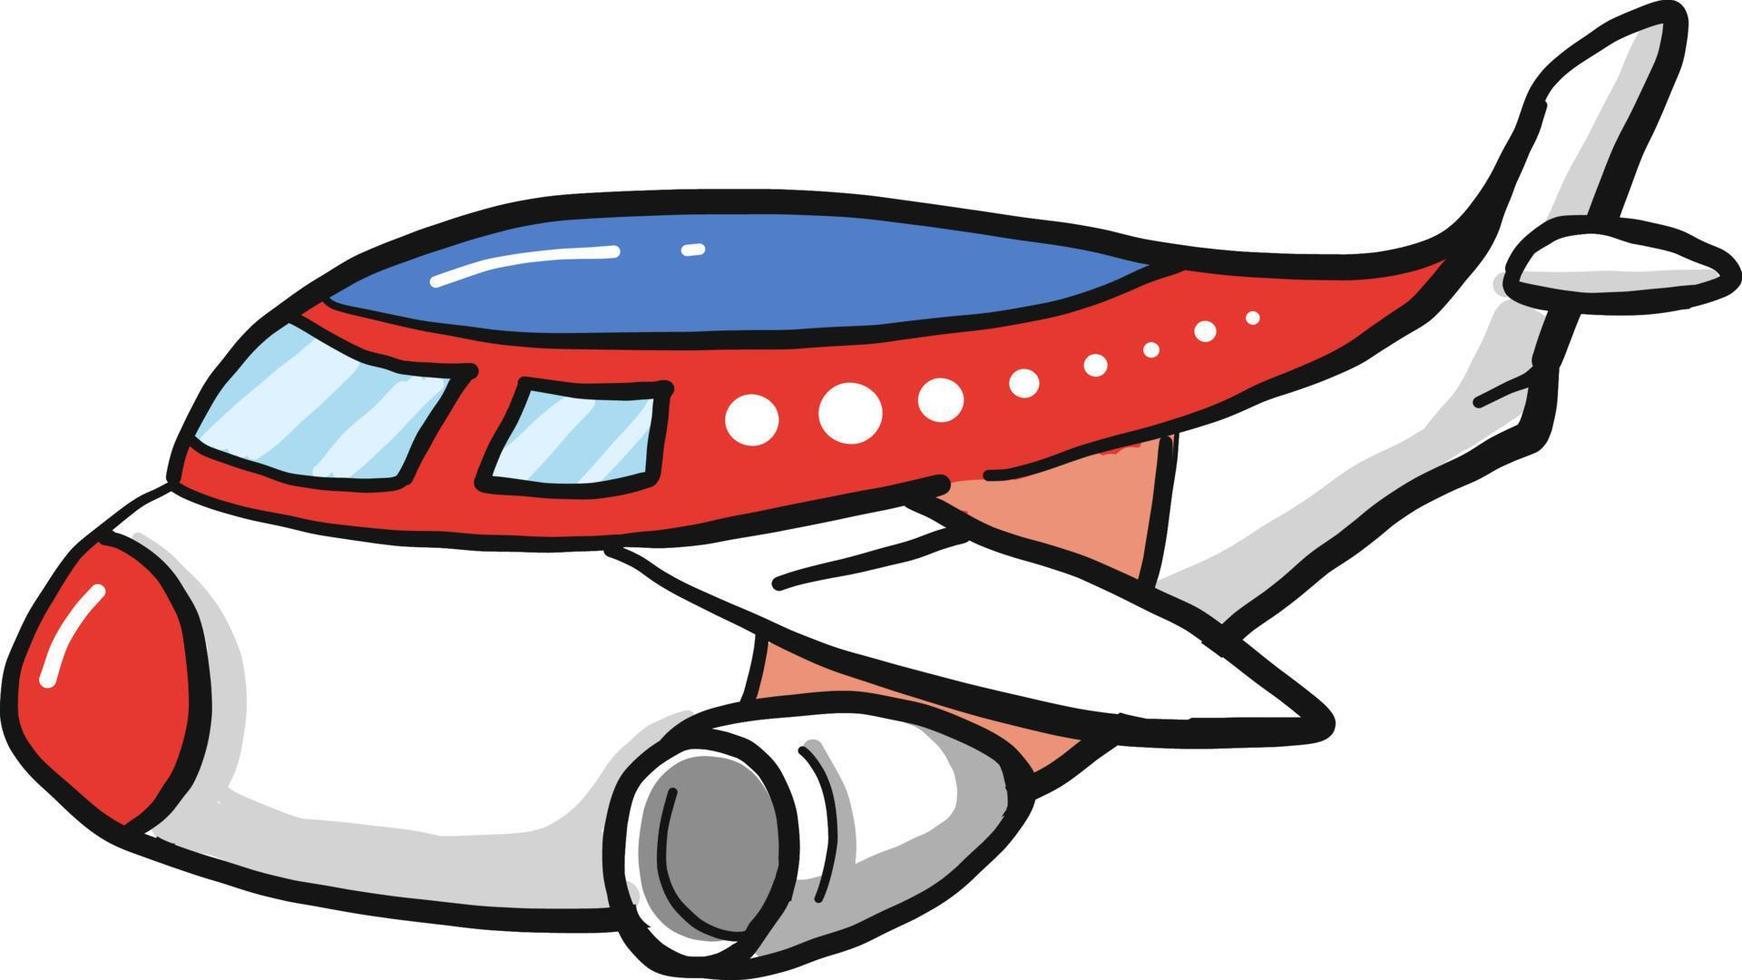 Lindo avión gordo, ilustración, vector sobre fondo blanco.